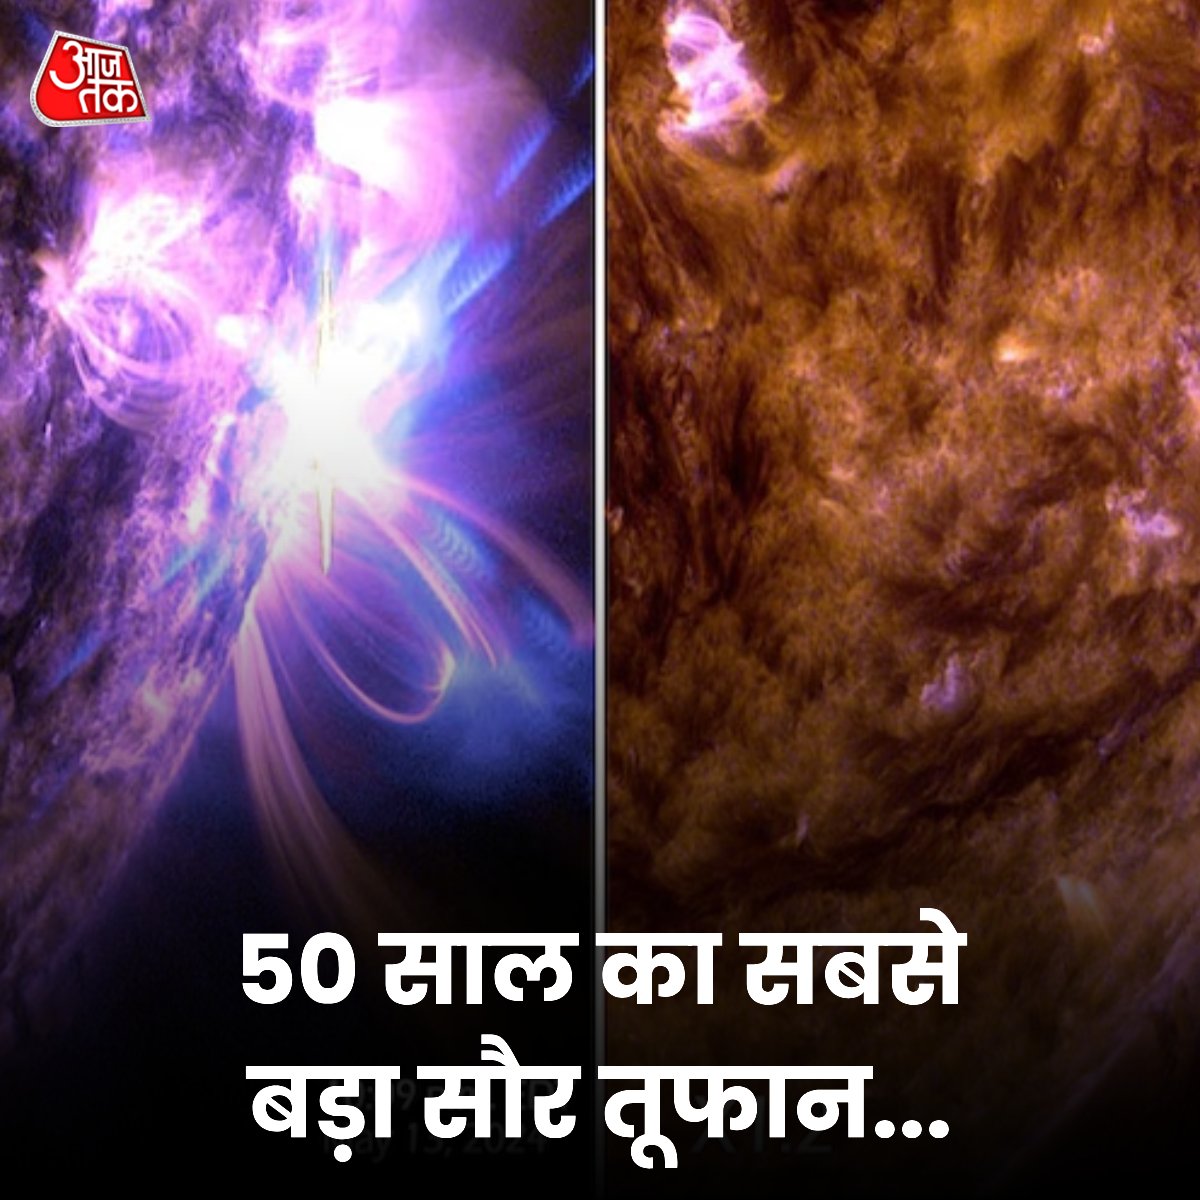 सूरज ने विशालकाय और सबसे ताकतवर सौर लहर धरती की ओर फेंकी है. यह X8.7 तीव्रता का विस्फोट था. आधी सदी में पहली बार इतनी तगड़ी सौर लहर सूरज से निकली है. वो भी उसी धब्बे से जहां से 11 मई से 13 मई के बीच दो बार विस्फोट हुआ था. ISRO के सूर्ययान यानी आदित्य-एल1 (Aditya-L1) स्पेसक्राफ्ट